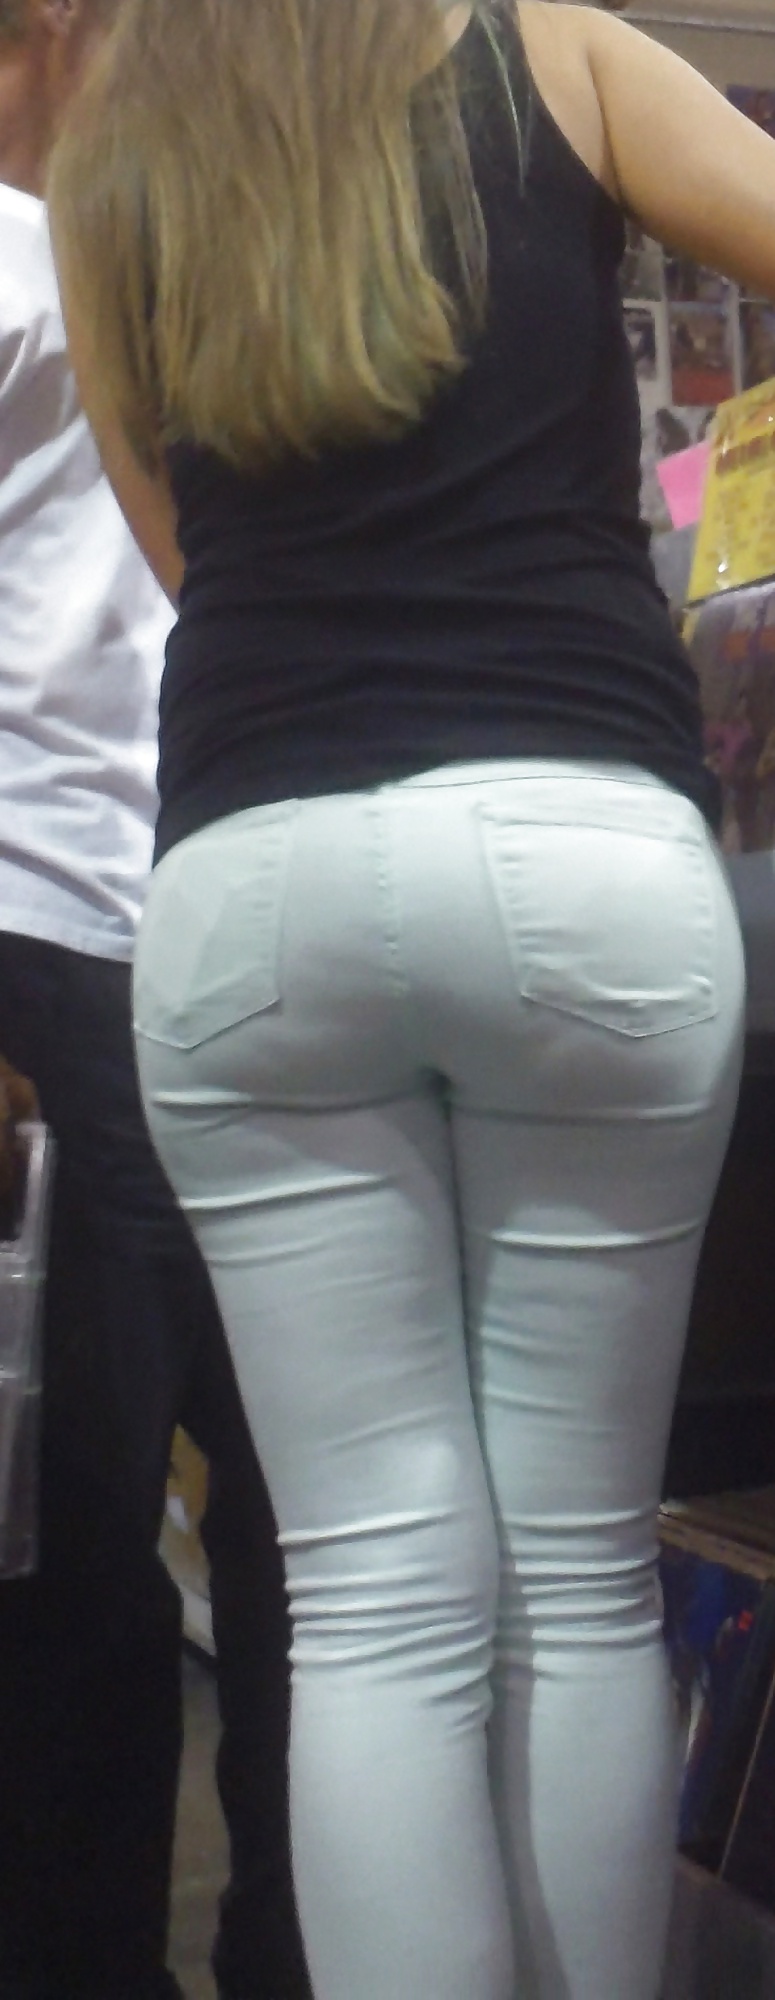 Popular teen girls ass & butt in jeans Part 5 #28731184